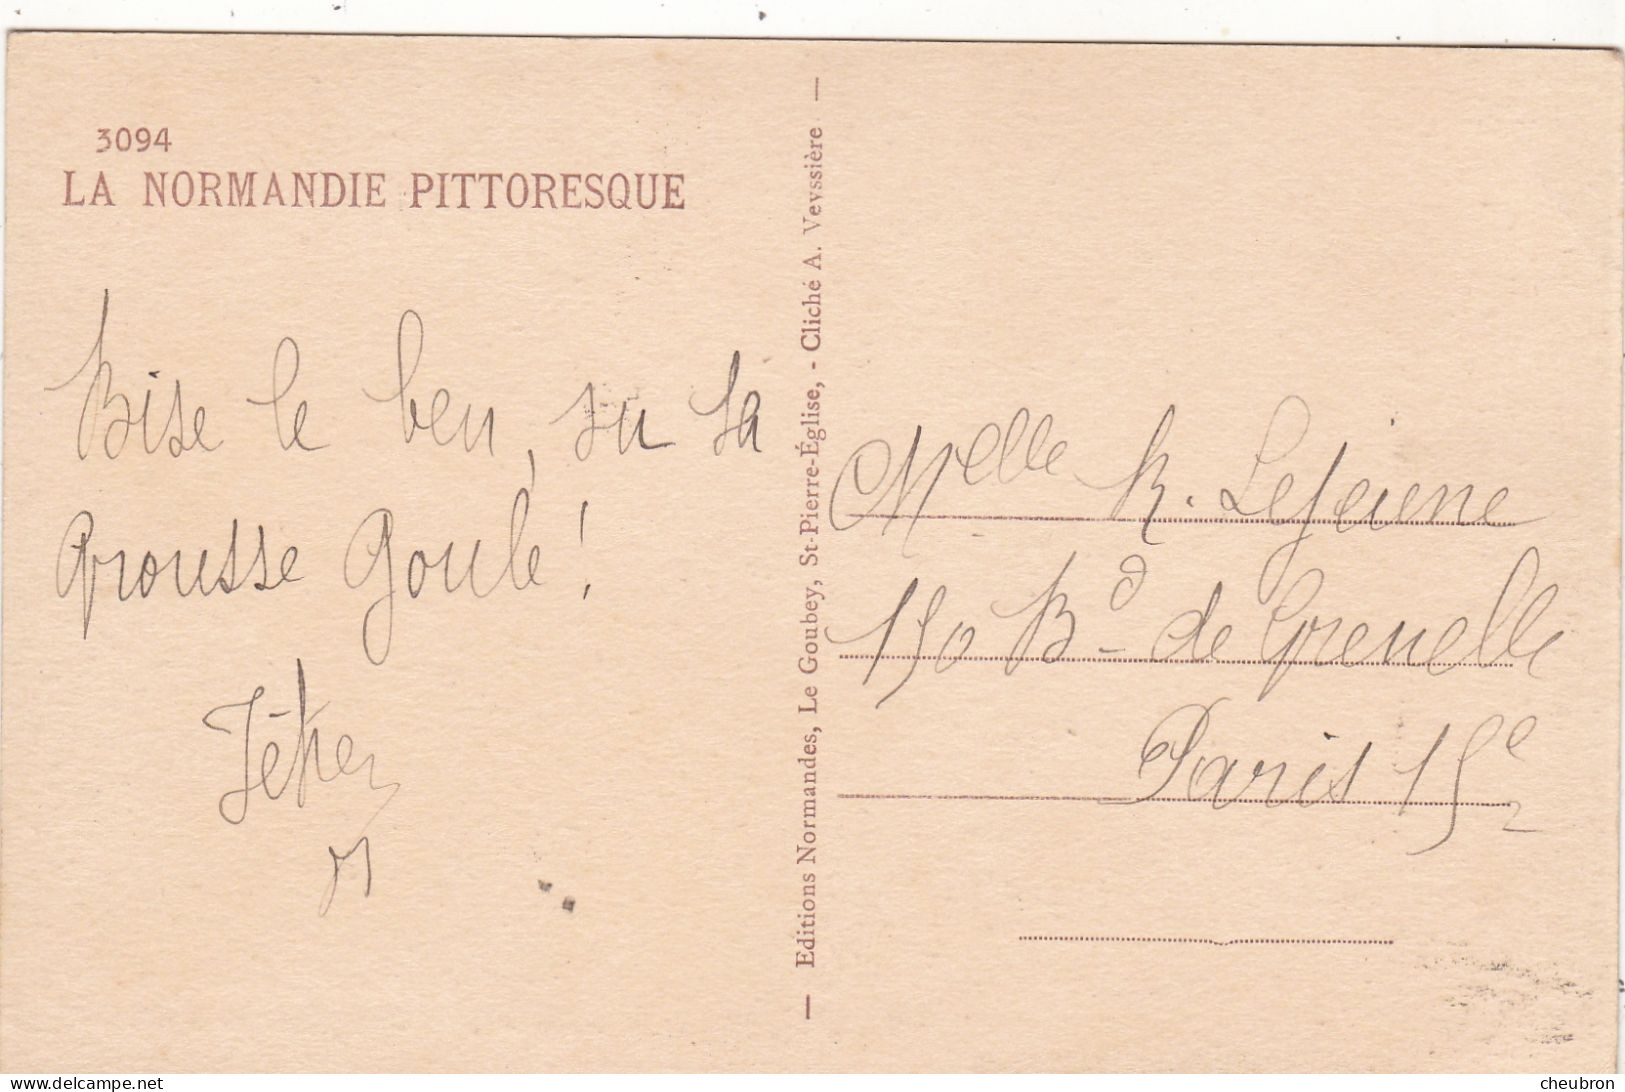 NORMANDIE PITTORESQUE. CPA. " HIER C'HETAIT LA R'VISION ". PHOTO LE GOUBEY .ANNEE 1949 + TEXTE - Basse-Normandie